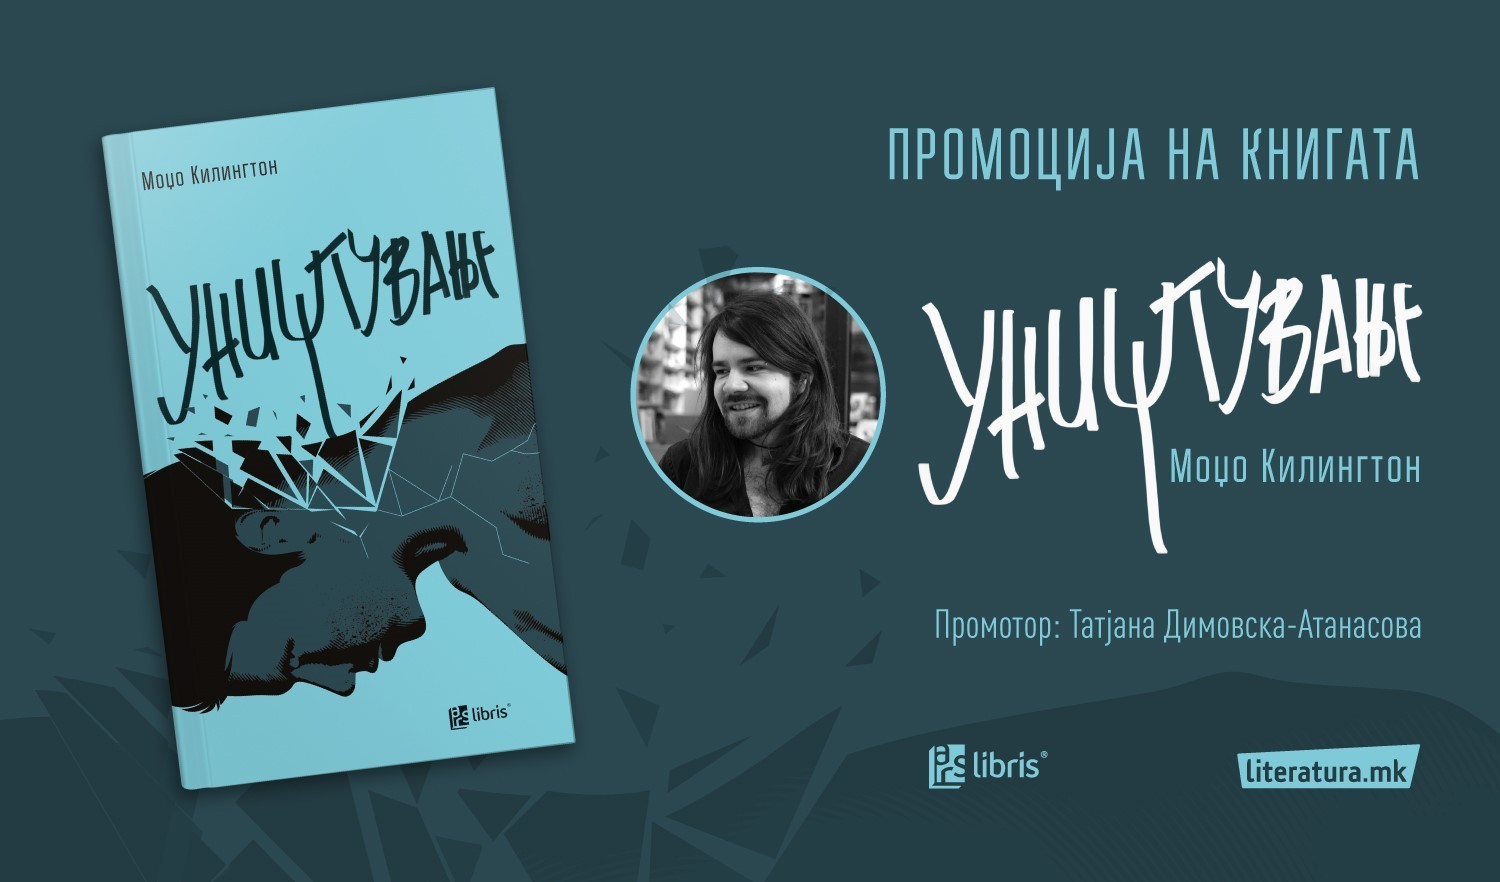 Moџо Килингтон ќе го промовира својот нов роман „Уништување“ во Literatura.mk Superstore во „Скопје Сити мол“